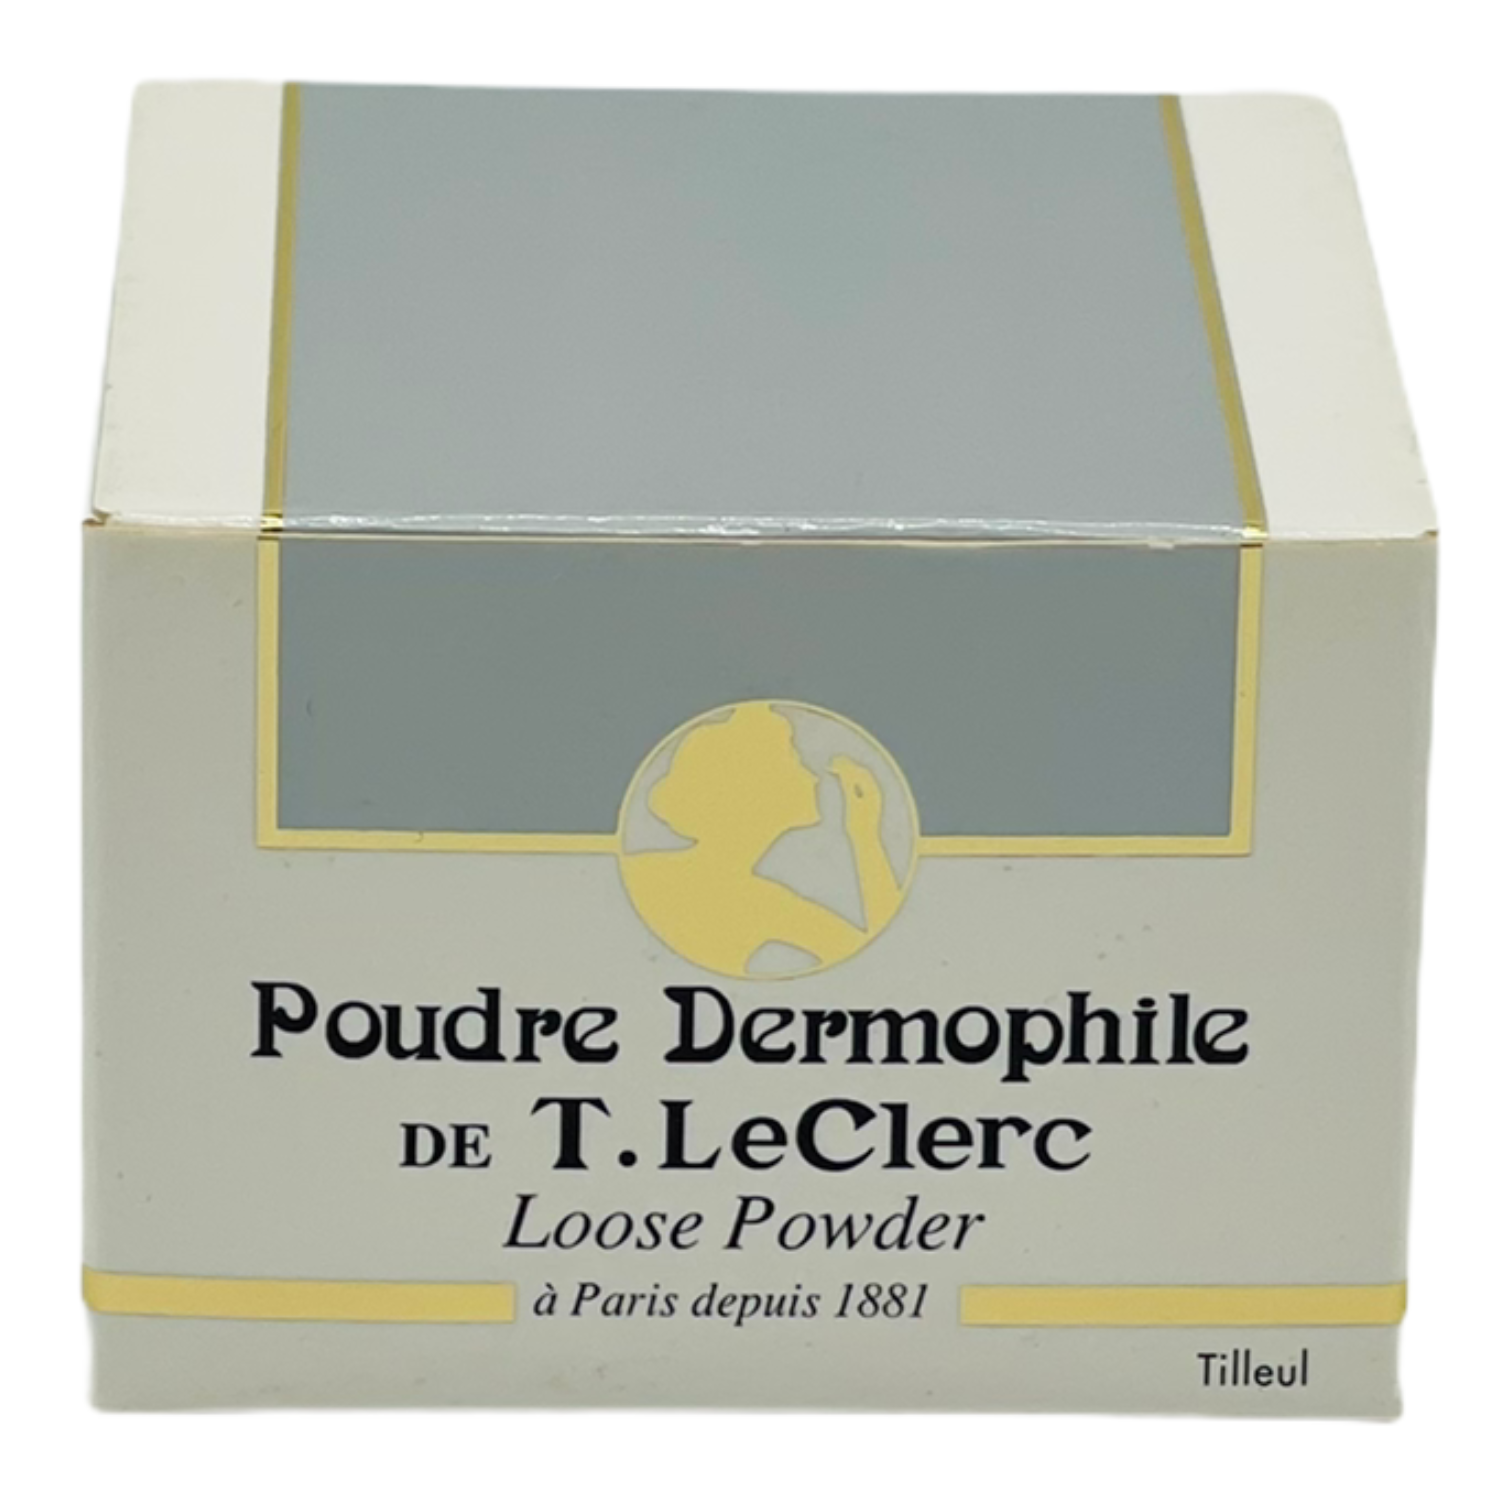 T. Le Clerc Poudre Libre Dermophile 35g